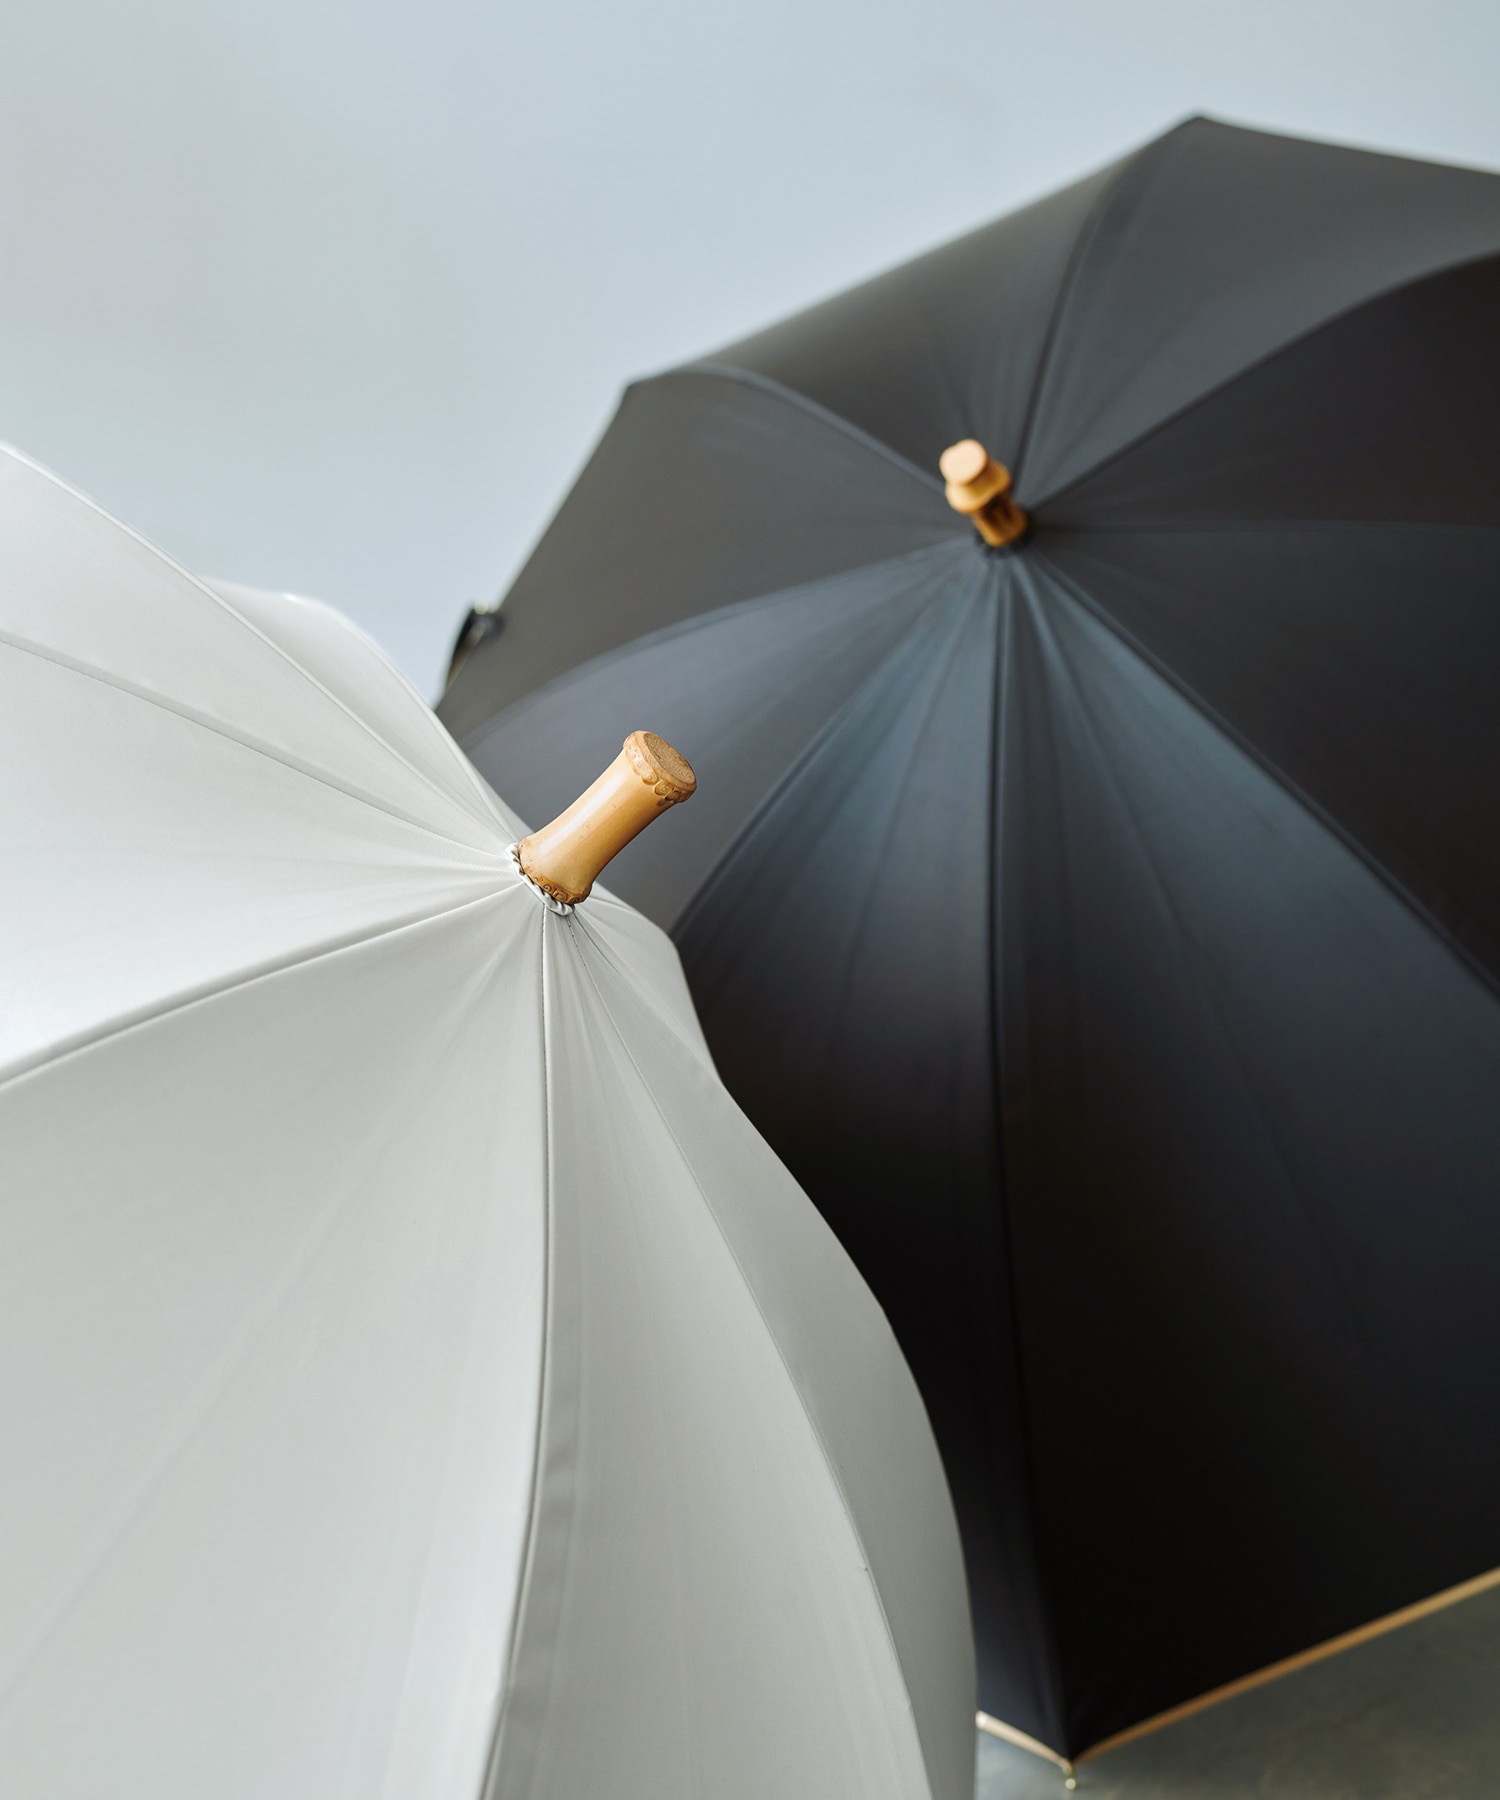 新品タグ付⭐️ LUDLOW ラドロー UV リボン パラソル 日傘 晴雨兼用傘-